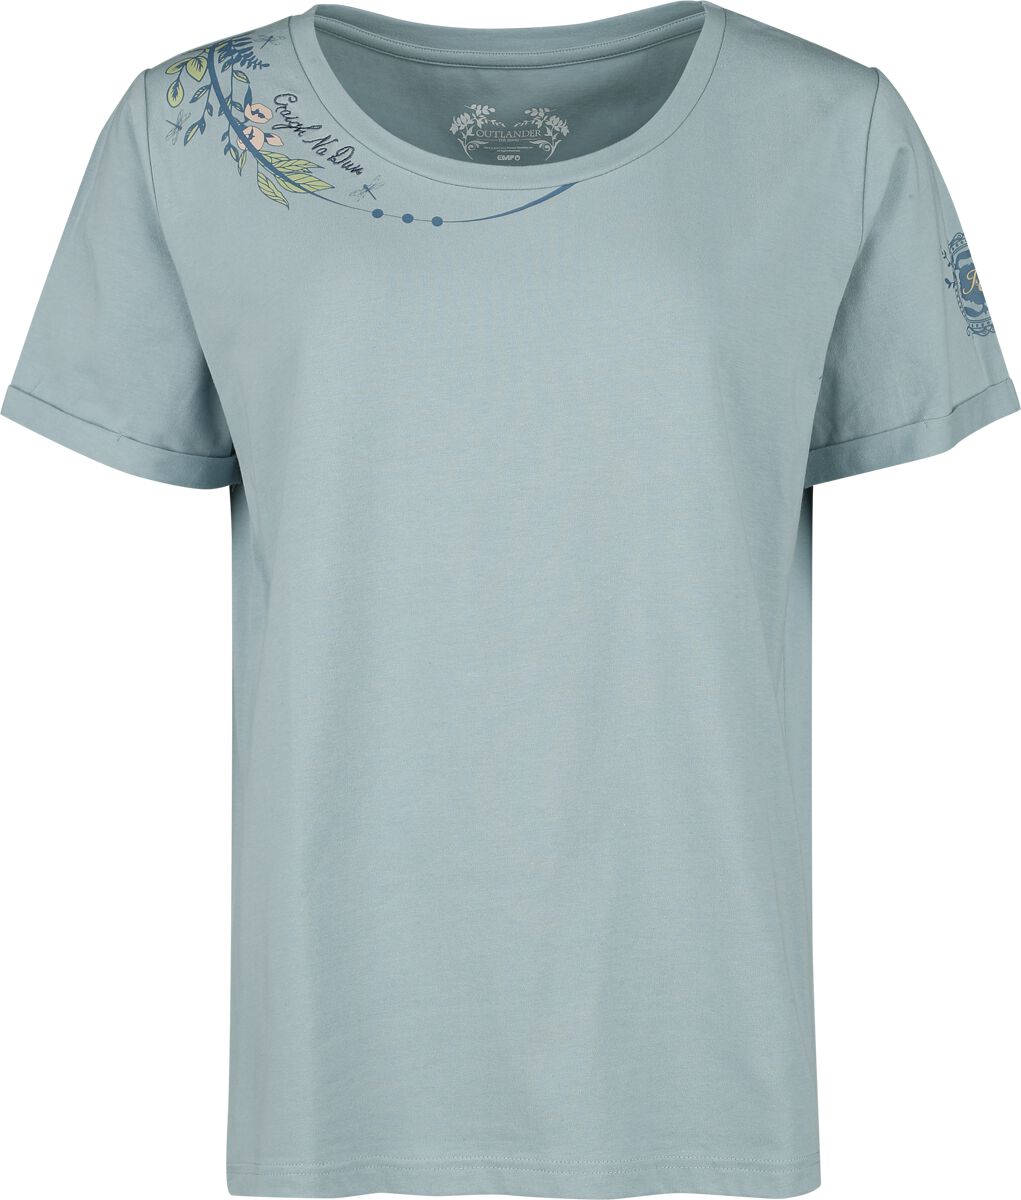 Outlander Craigh Na Dun T-Shirt blau in M